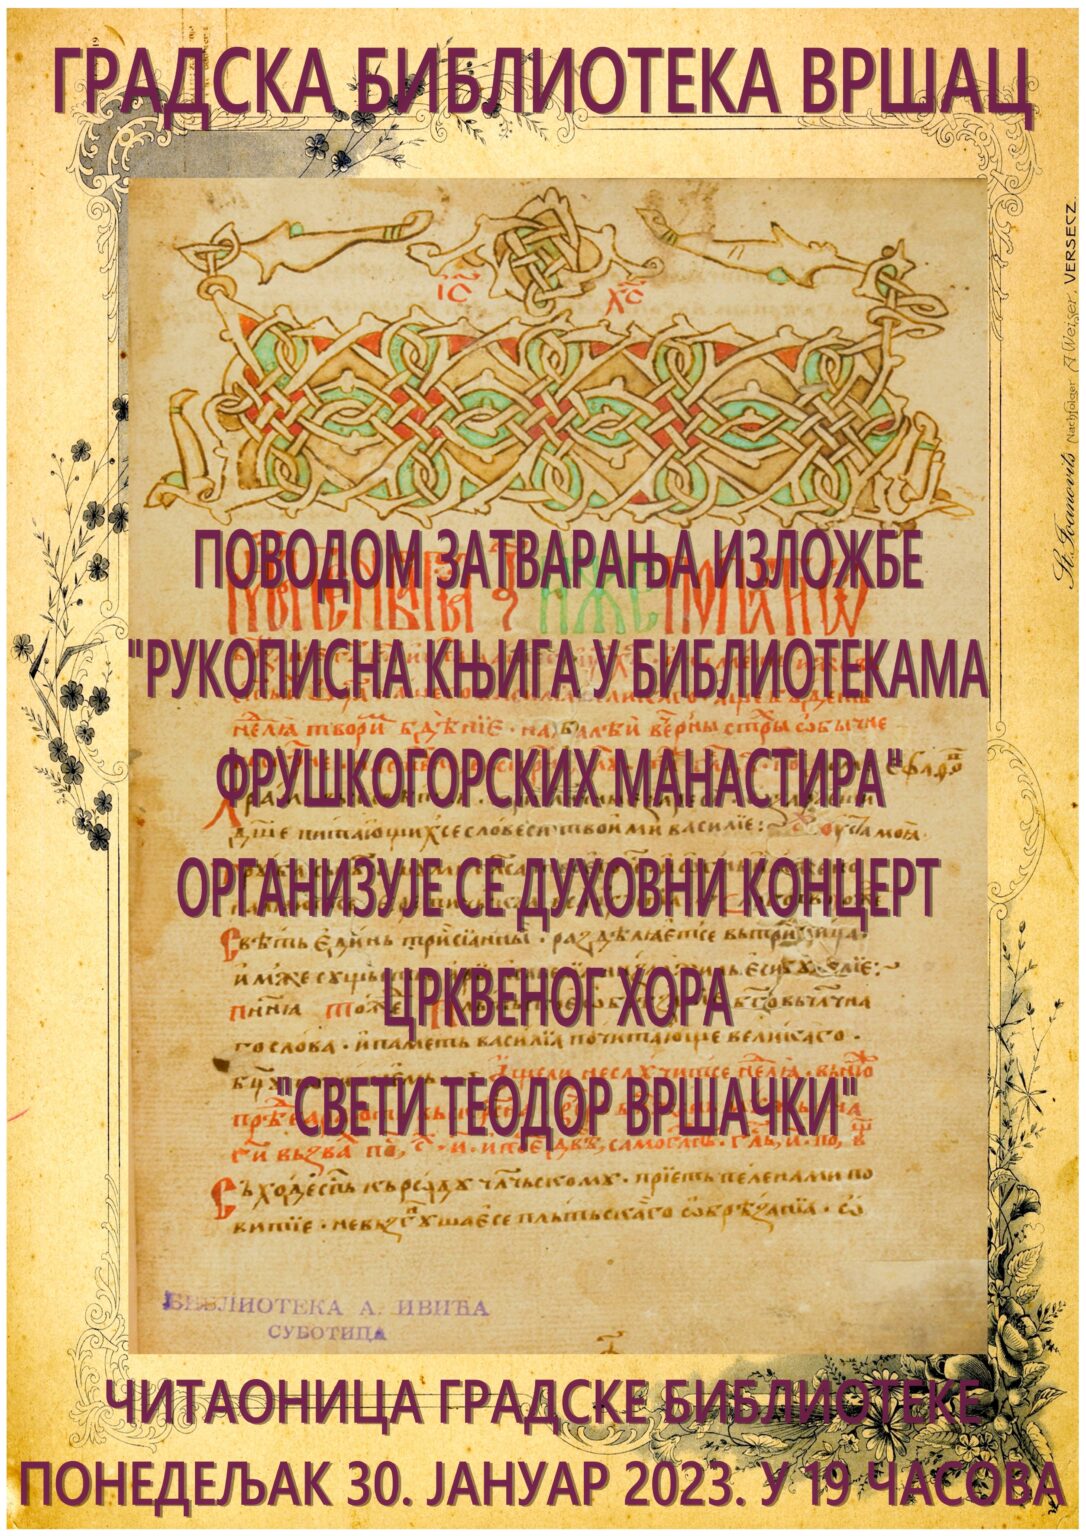 Vršac: Duhovni koncert Crkvenog hora „Sveti Teodor Vršački“